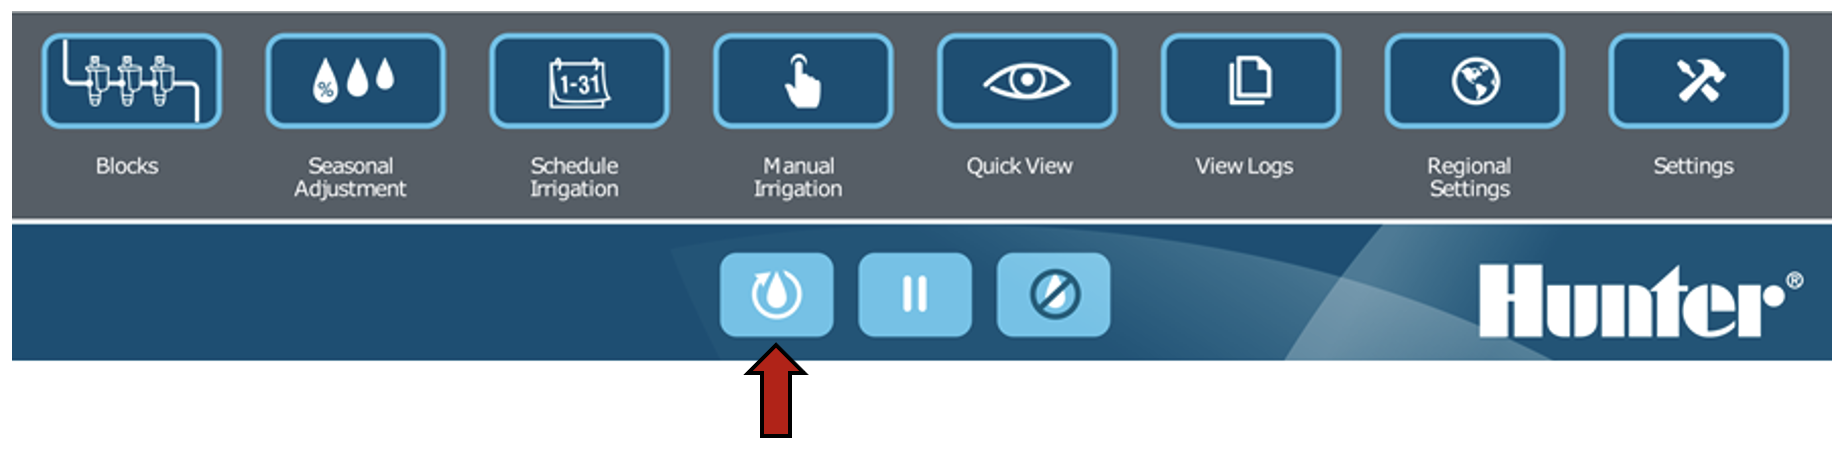 Image de l'interface mettant en évidence le bouton pour reprendre.